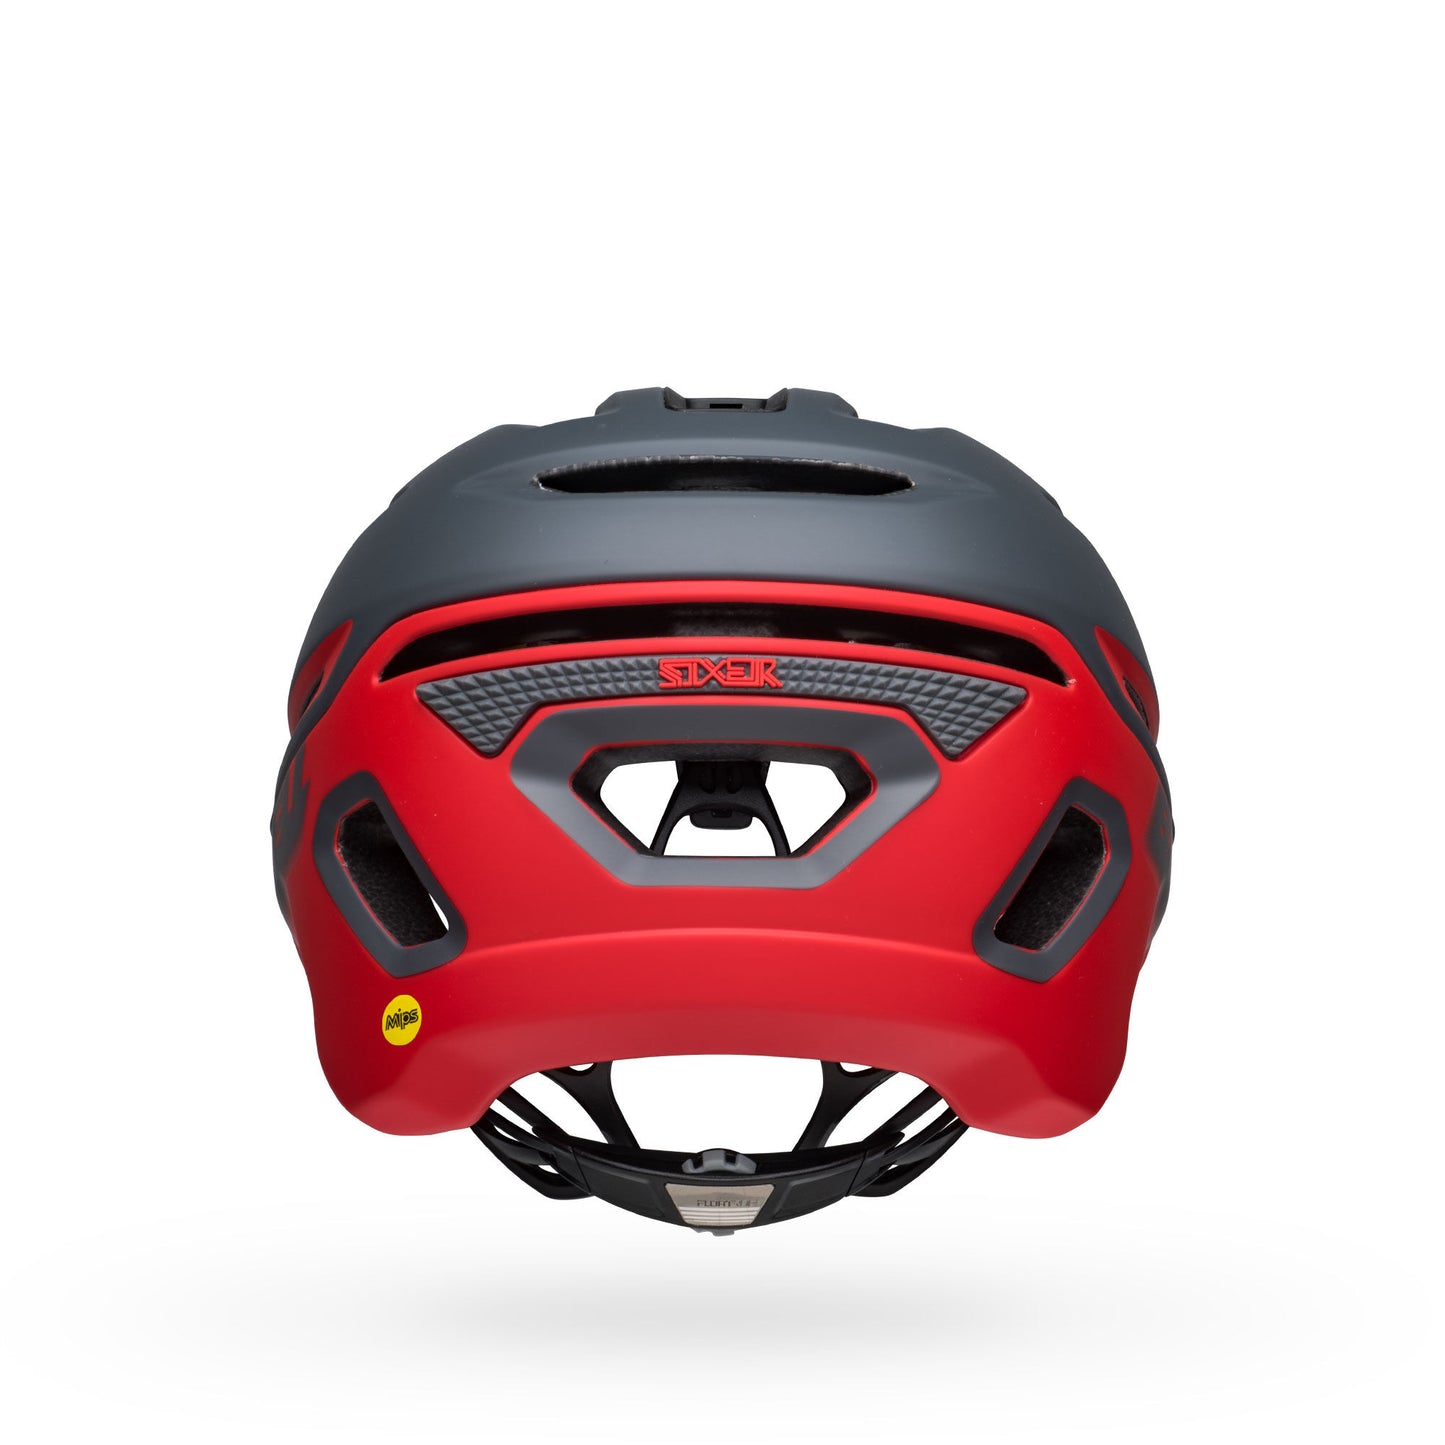 Bell Sixer MIPS Helmet Matte Gray/Red Bike Helmets